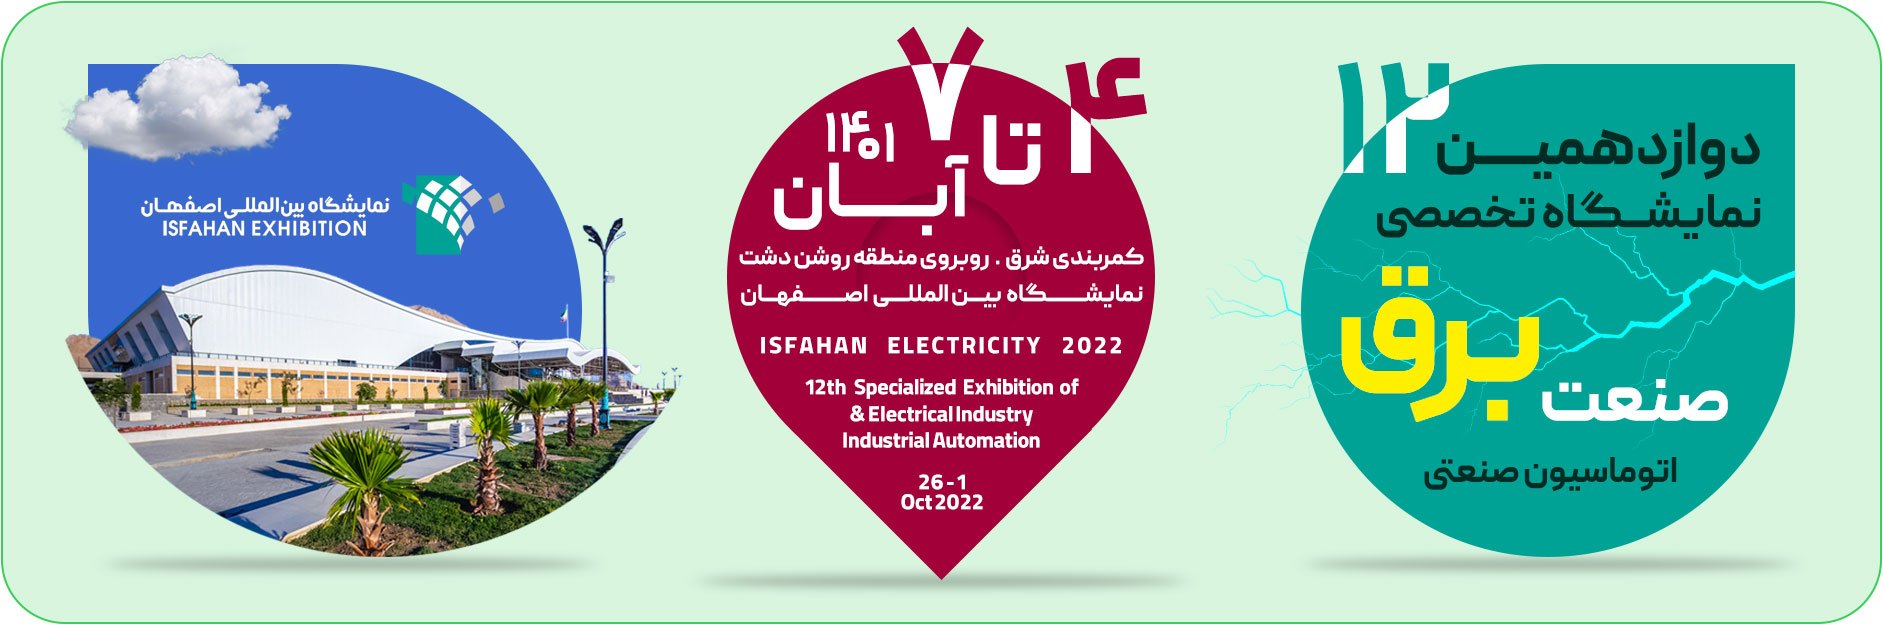 آرانرژی در نمایشگاه صنعت برق اصفهان - فروشگاه اینترنتی آرانرژی